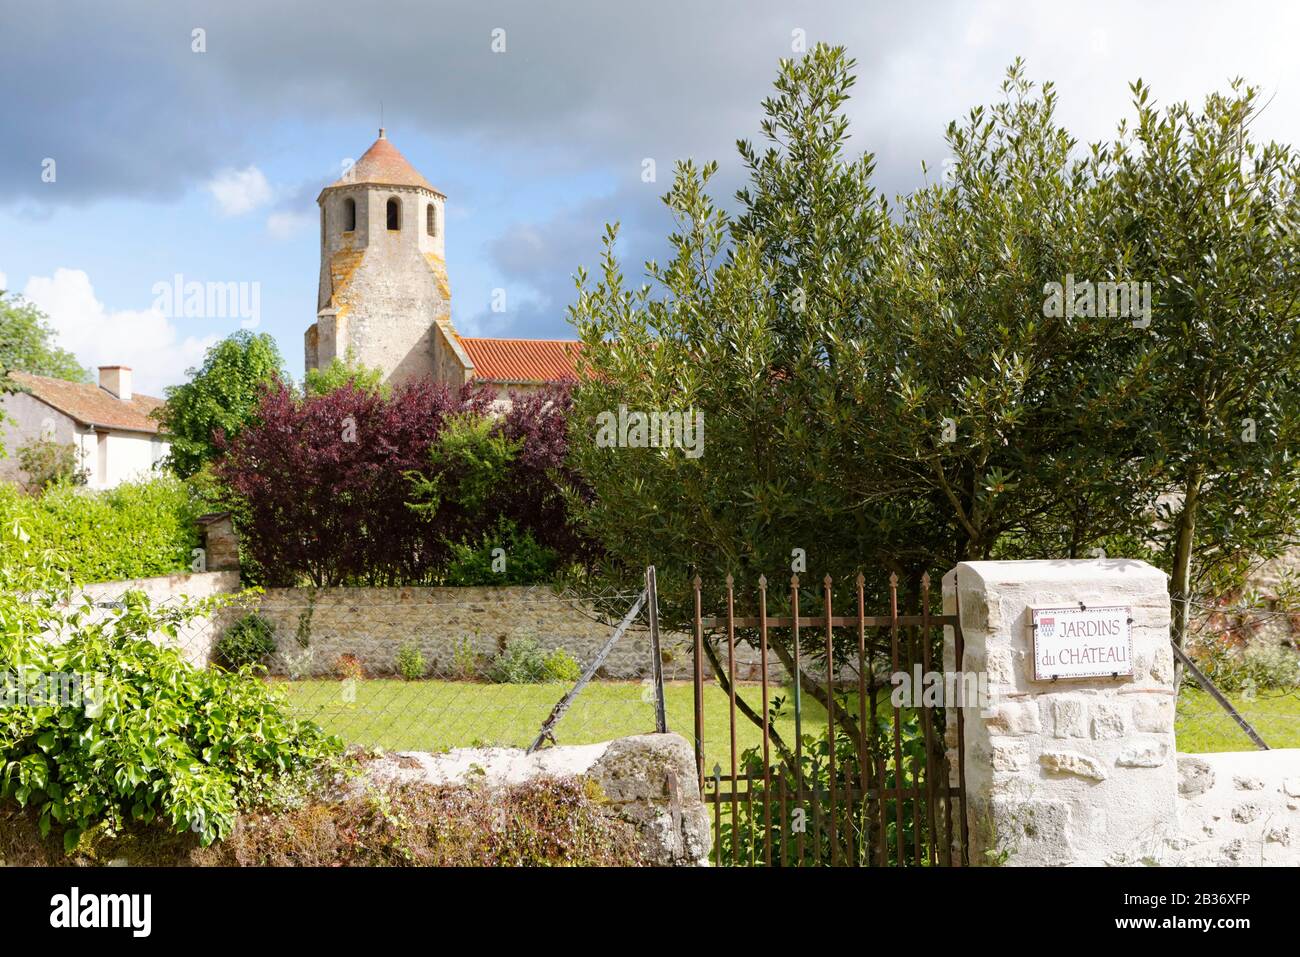 France, Allier, Verneuil-en-Bourbonnais, Saint-Pierre church Stock Photo